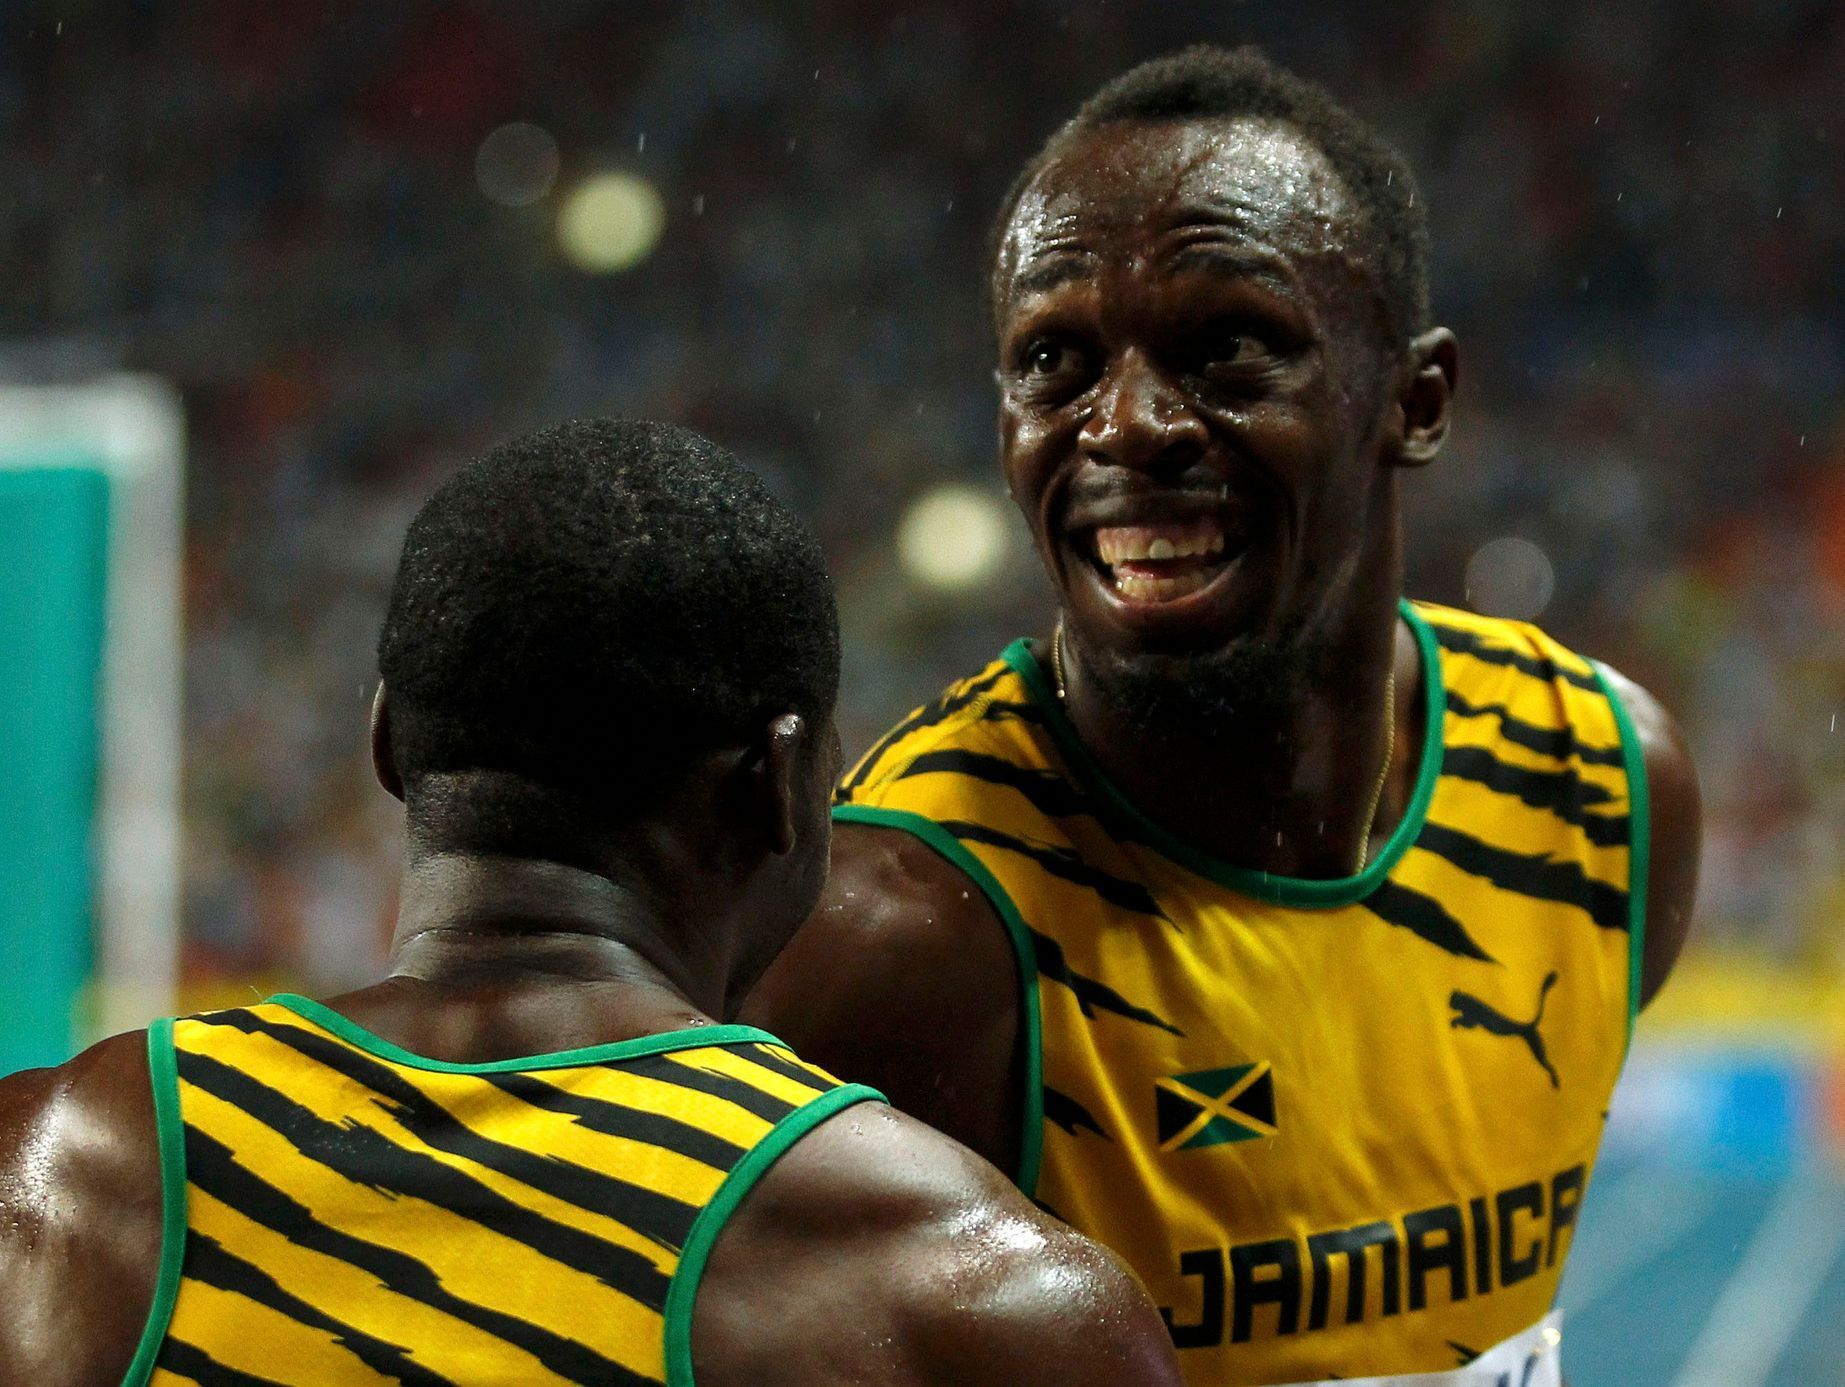 MS v atletice 2013, 100 m - finále: Nesta Carter a Usain Bolt